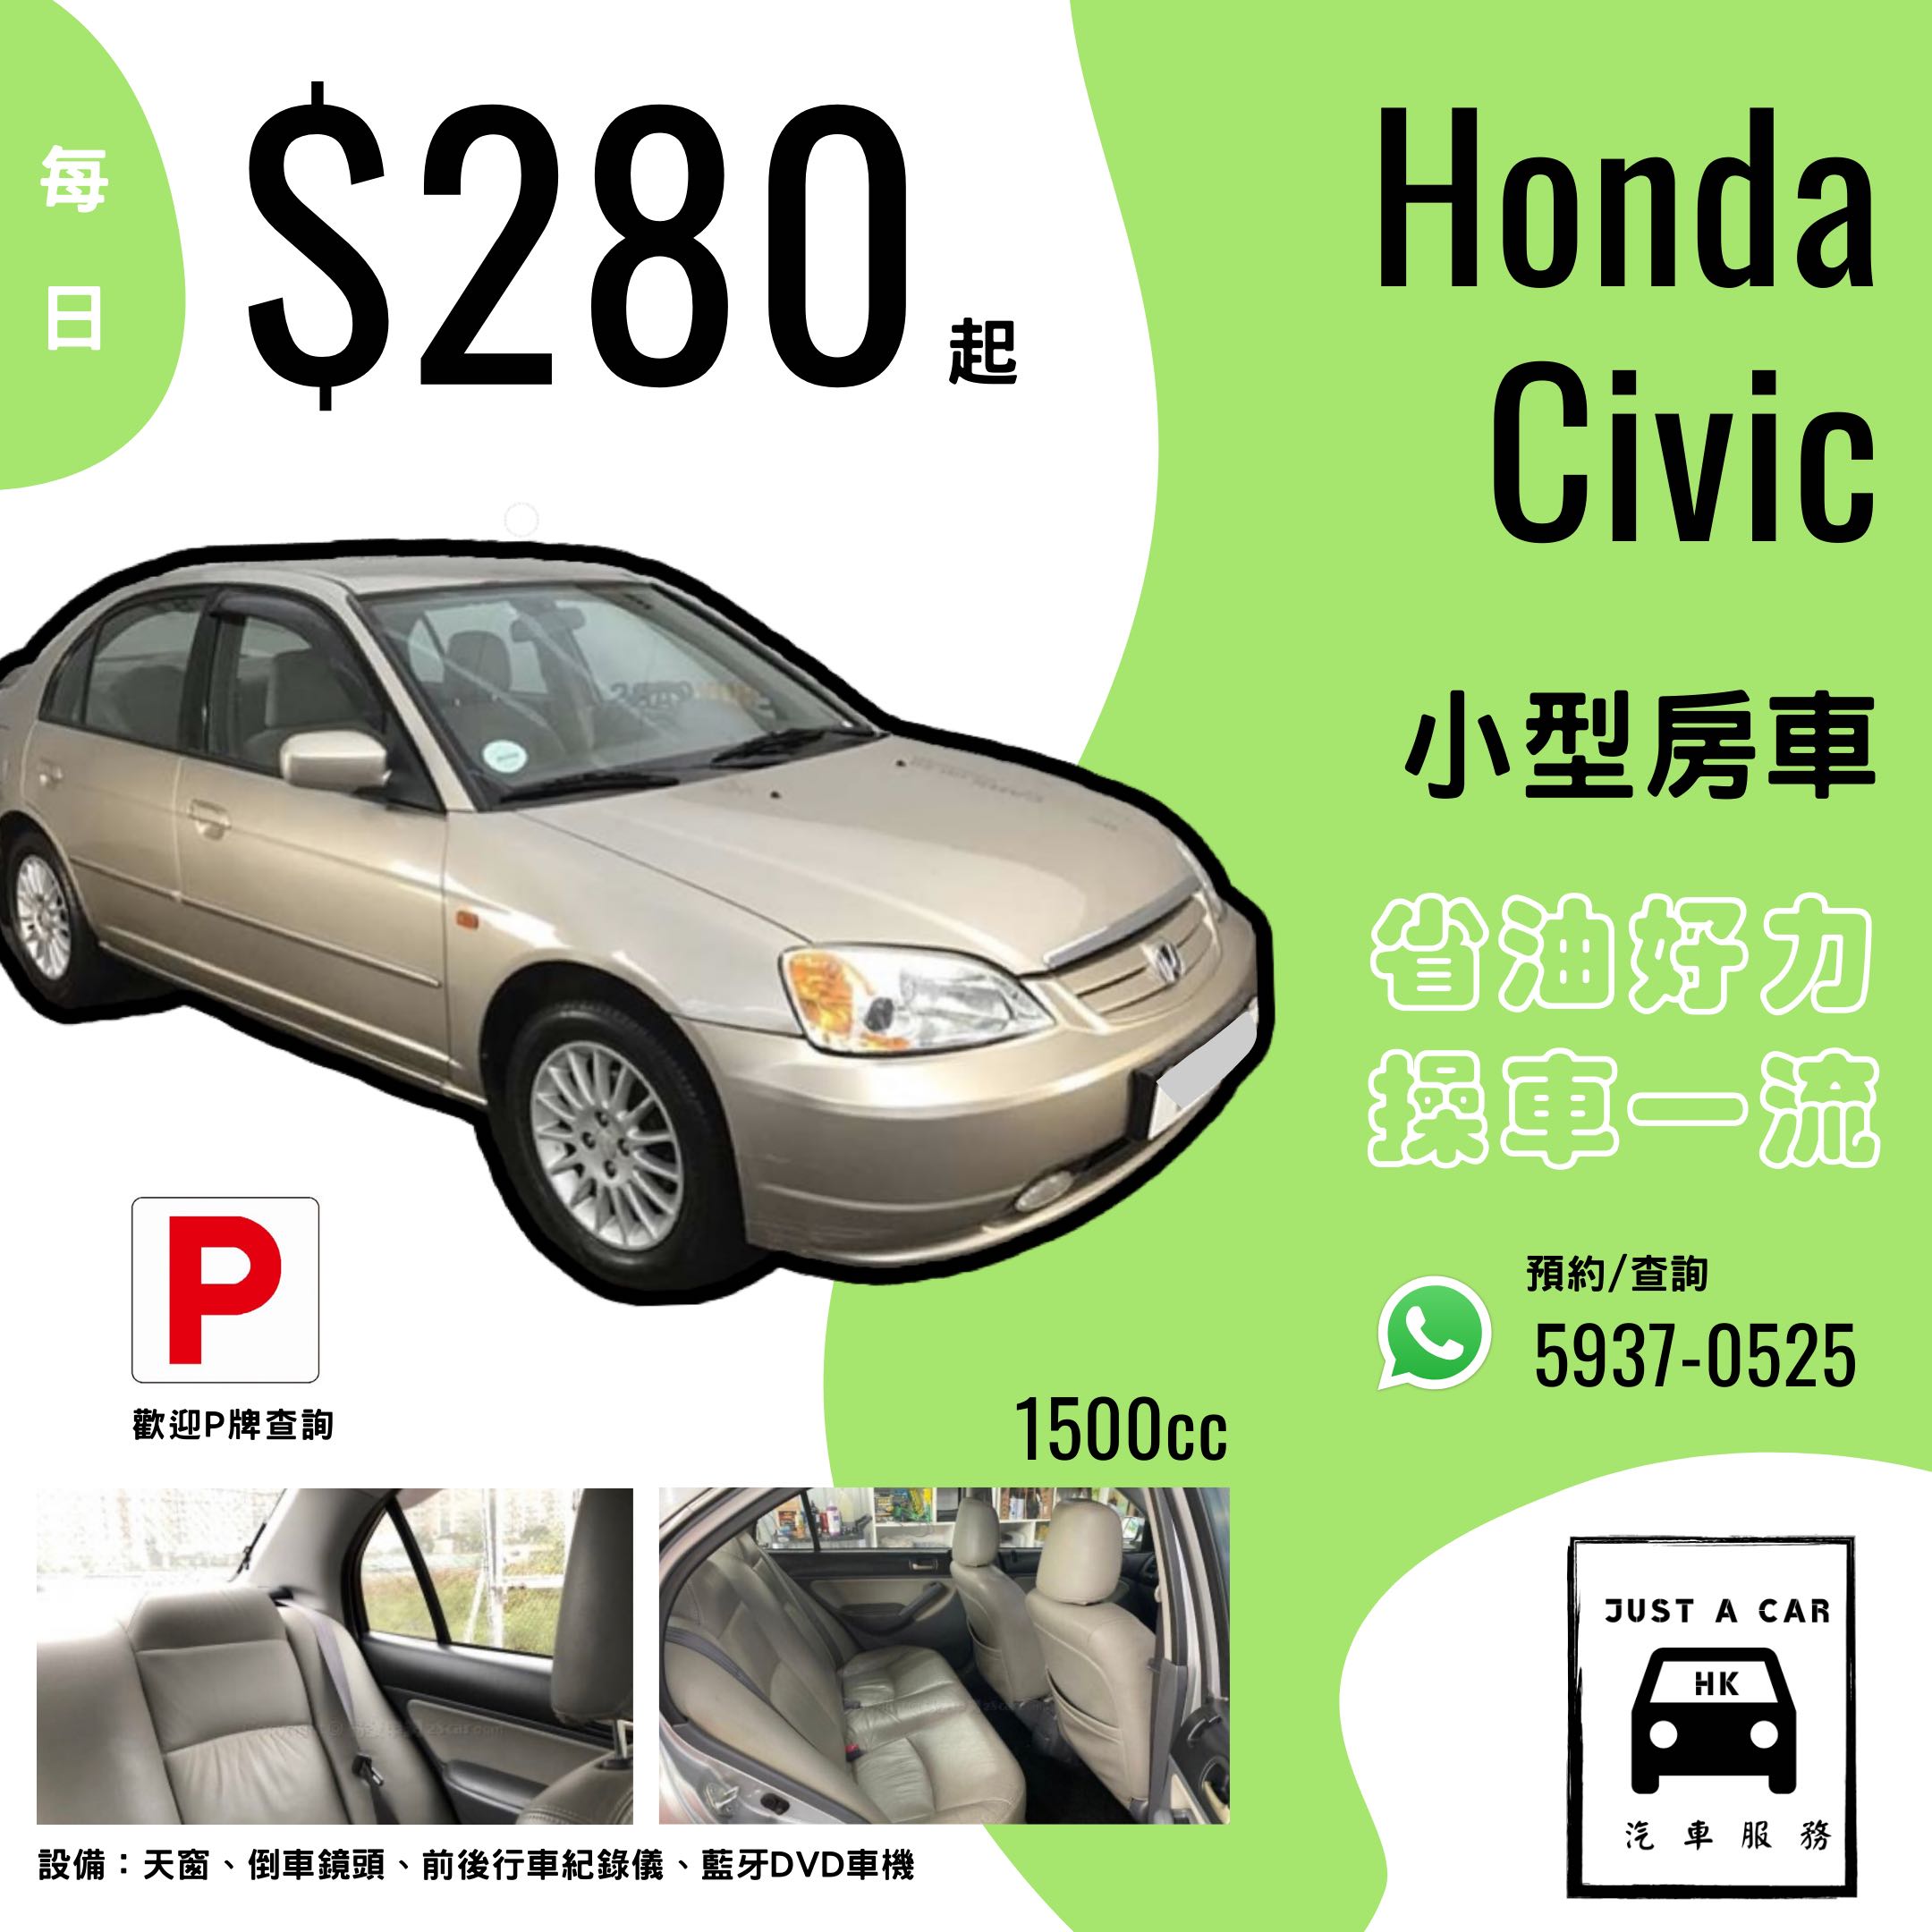 Honda Civic 1.5 Sedan VTEC Turbo (A)